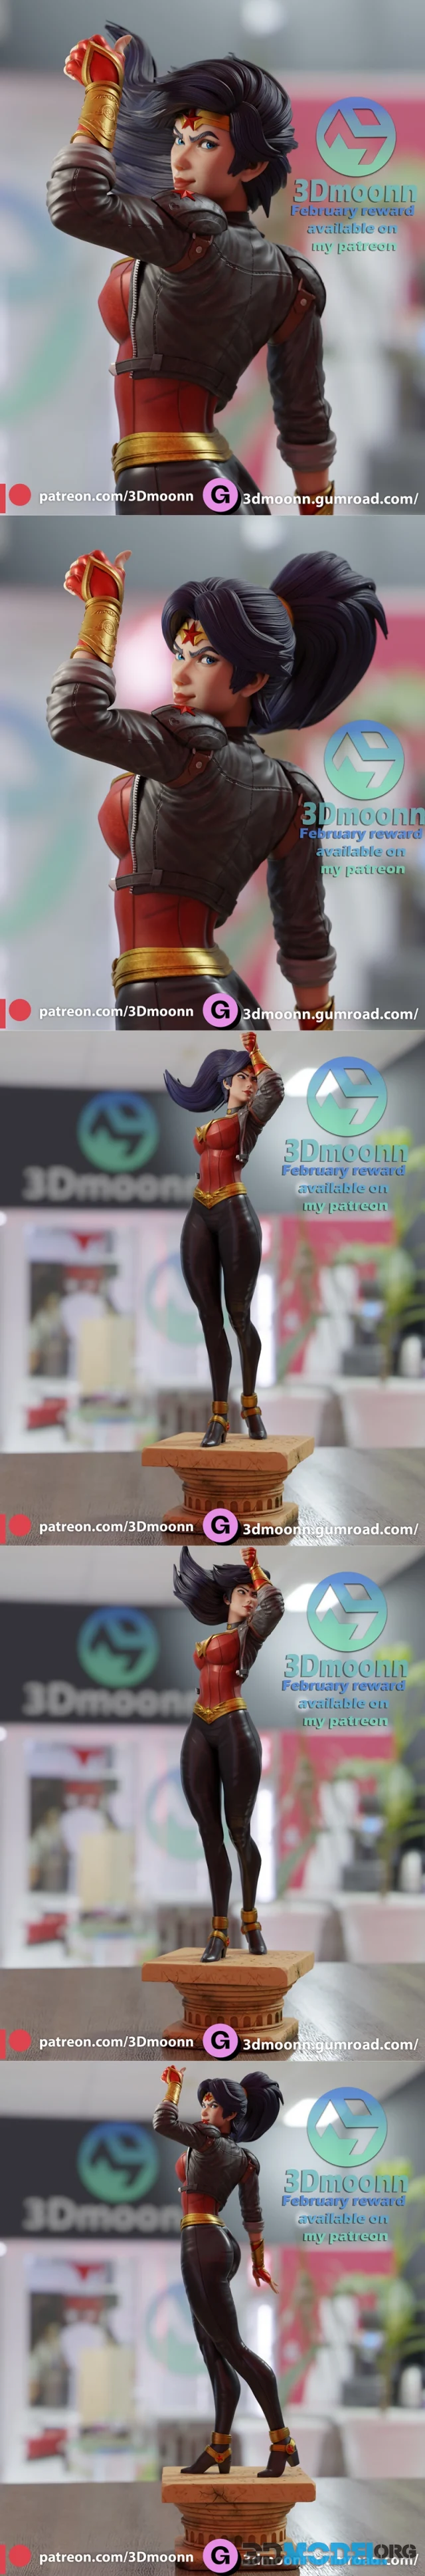 Wonder Woman - 3Dmoonn – Printable